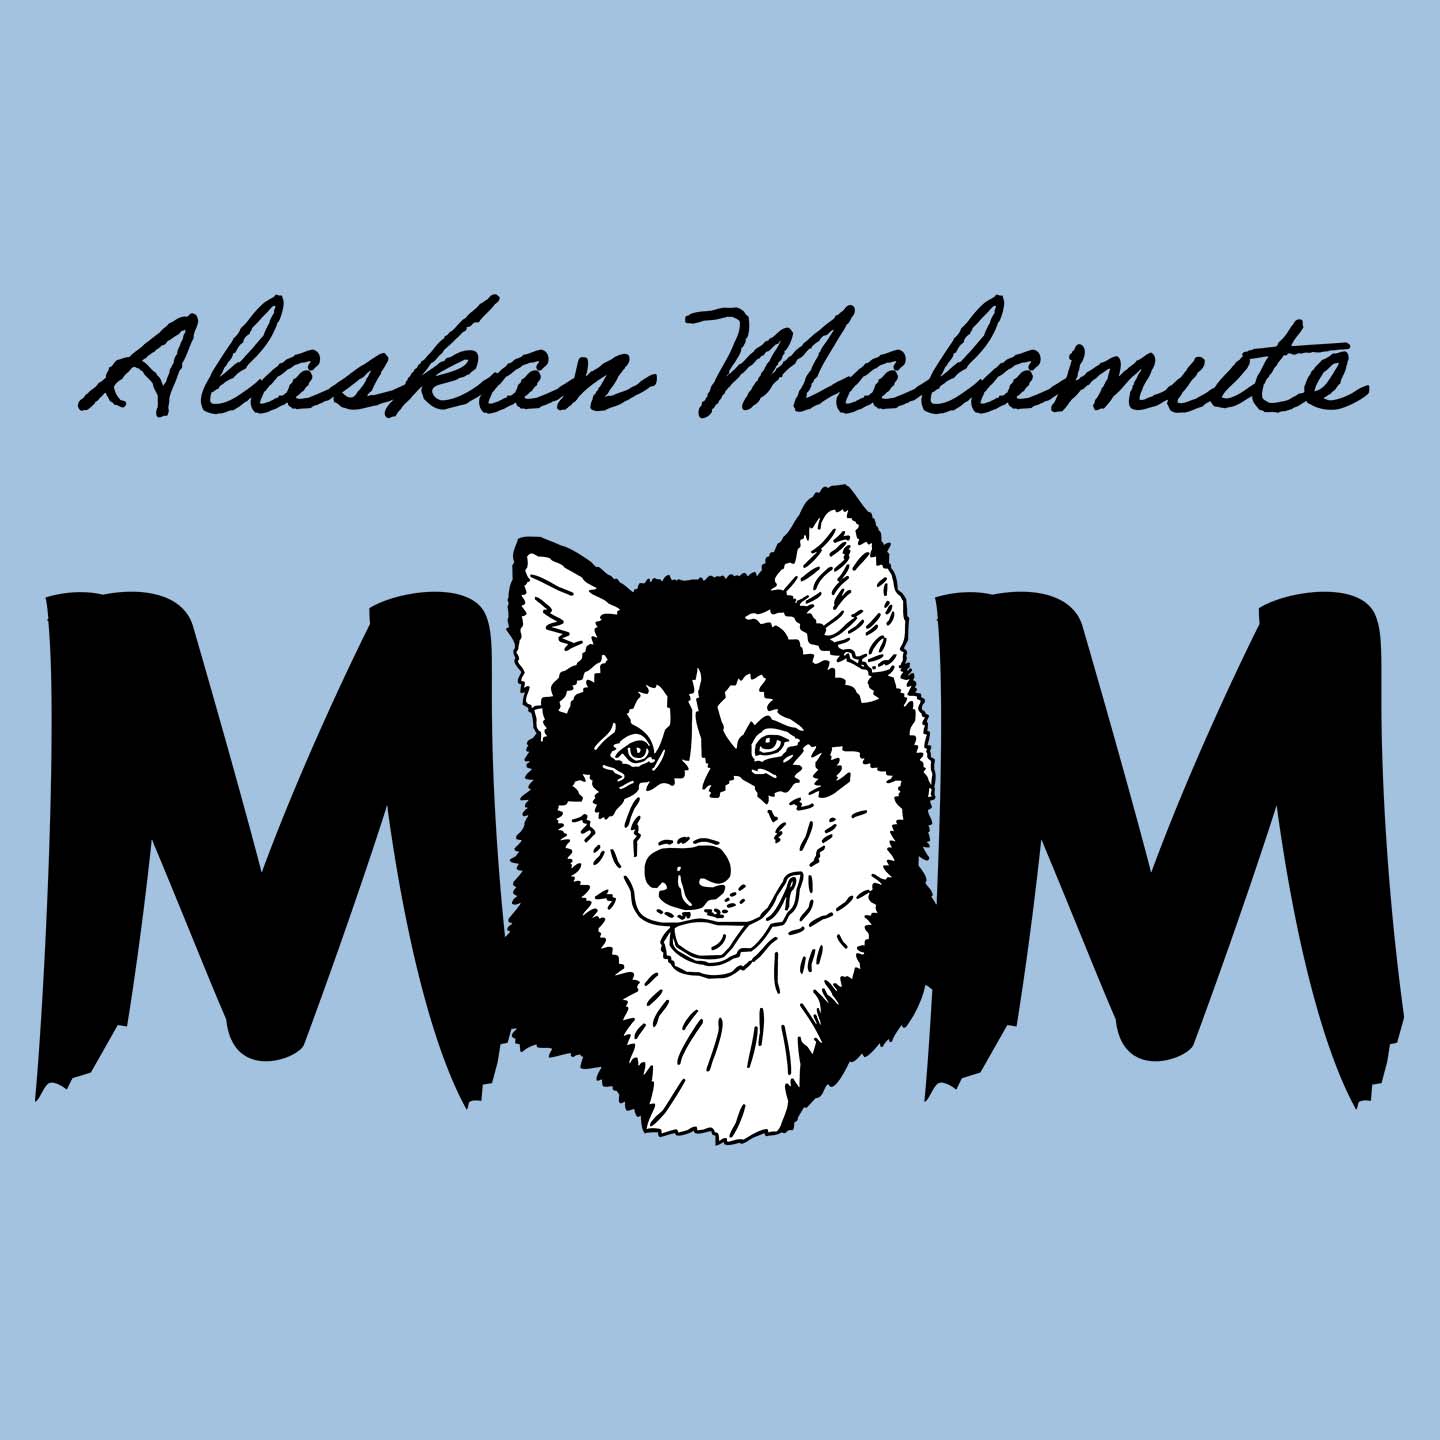 Alaskan Malamute Breed Mom - Women's Fitted T-Shirt